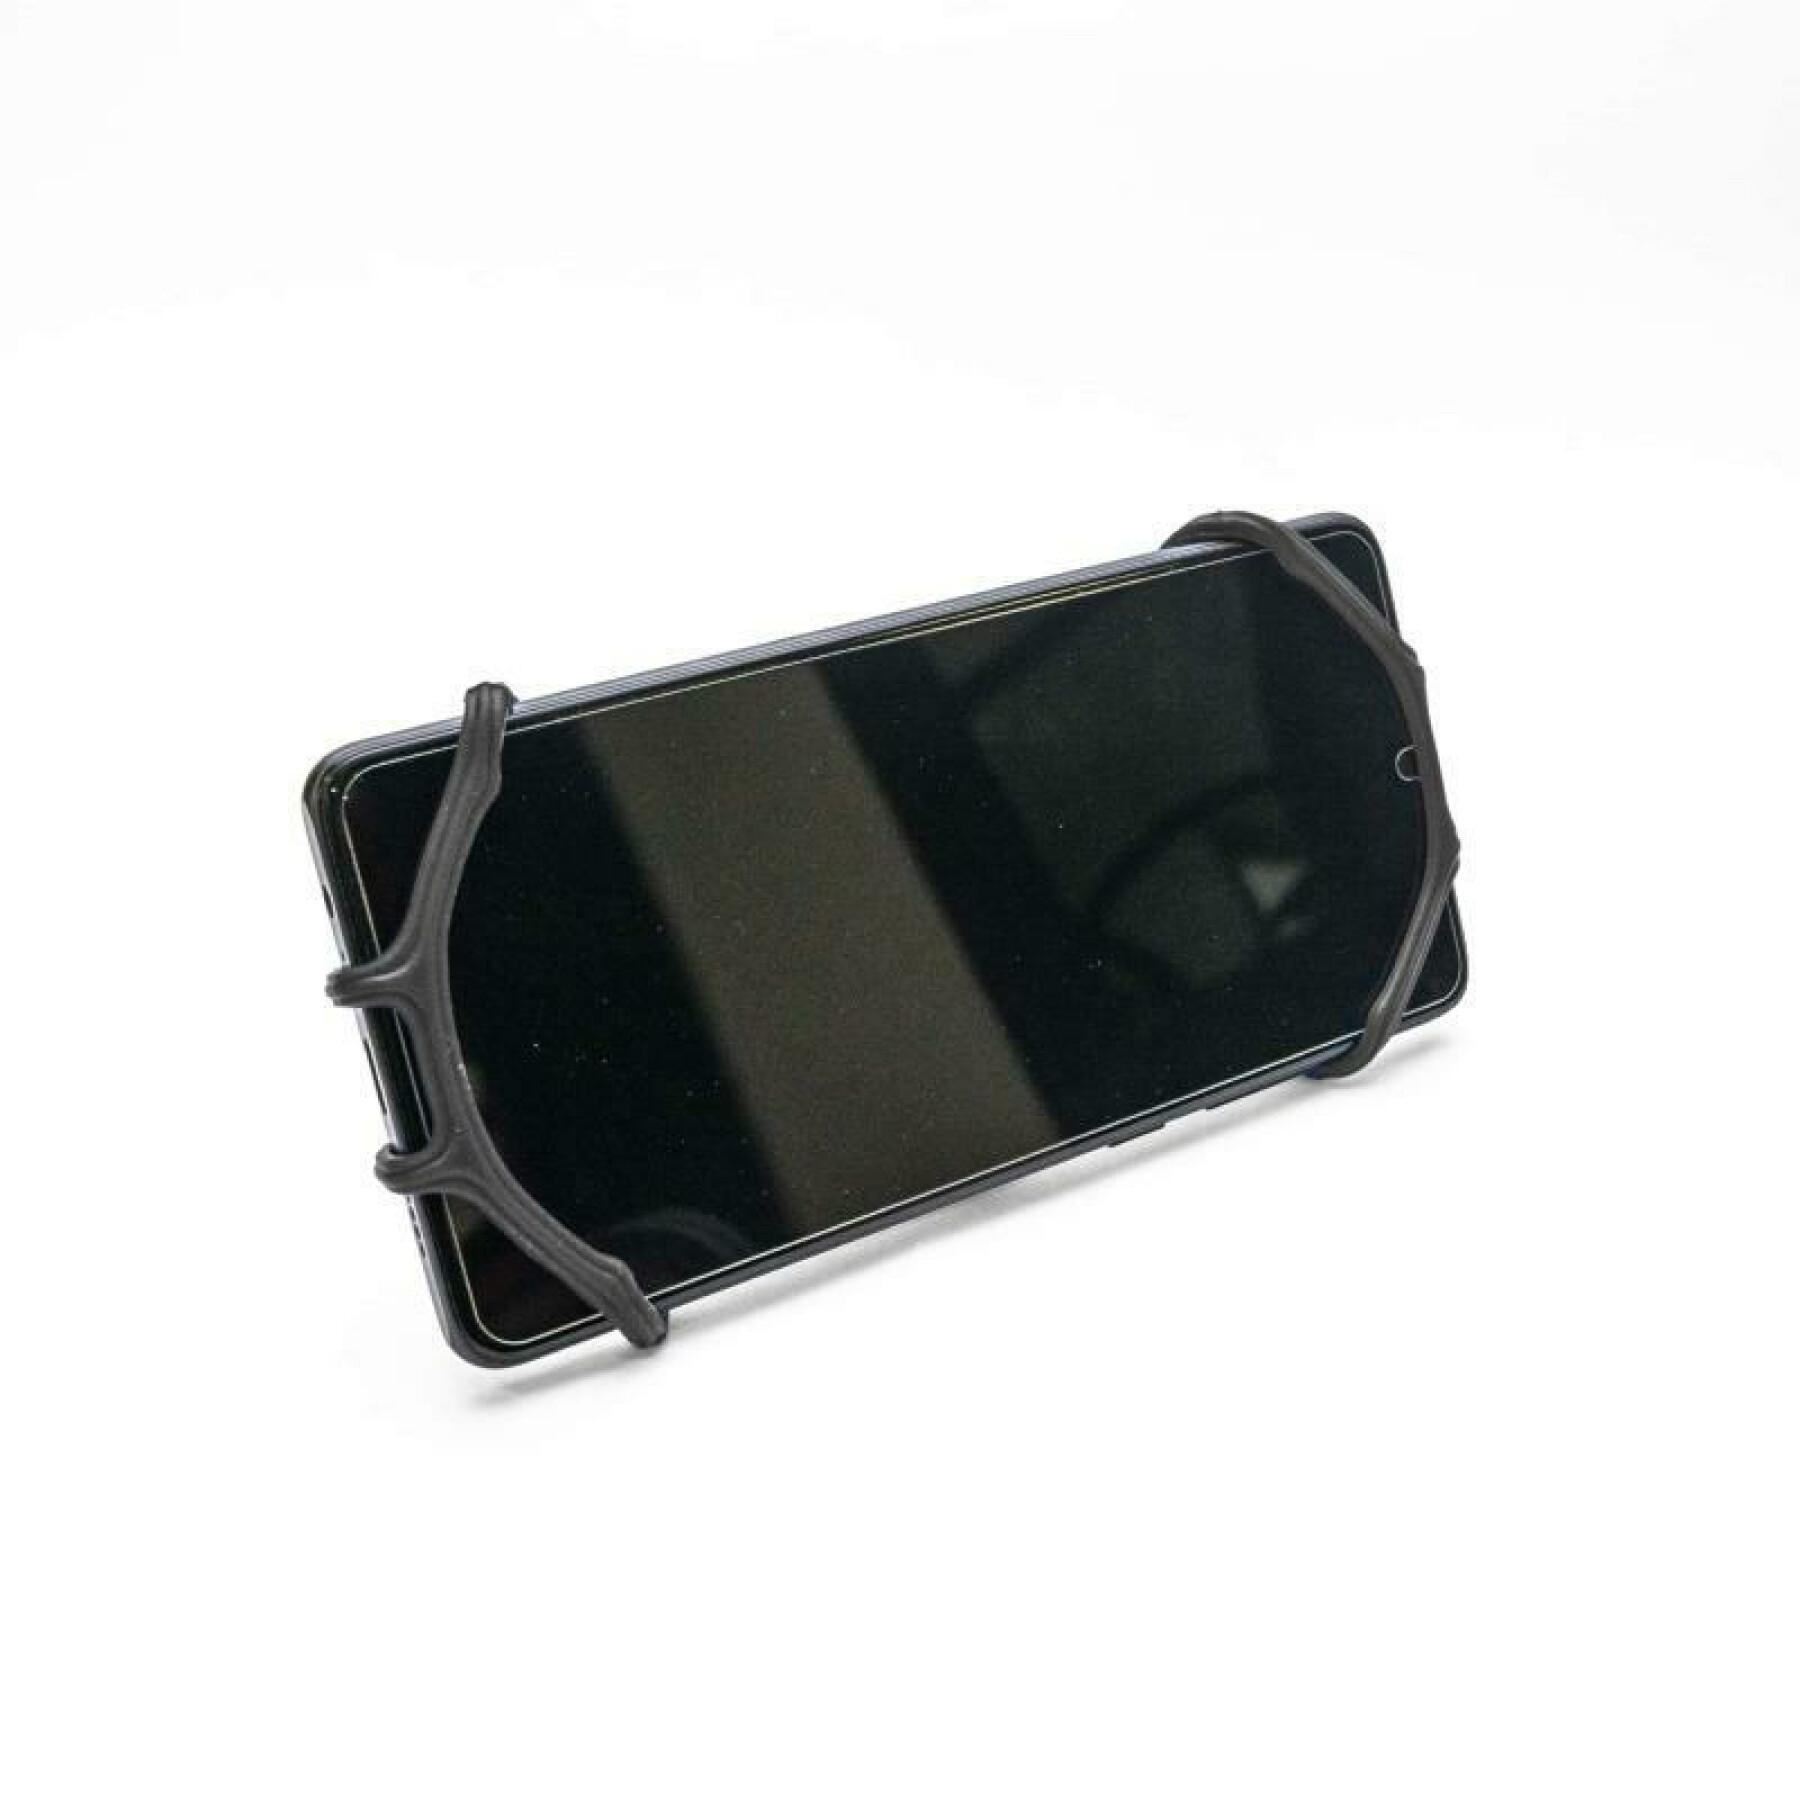 Soporte universal para smartphone para manillar de patinete y bicicleta Toad handy holder